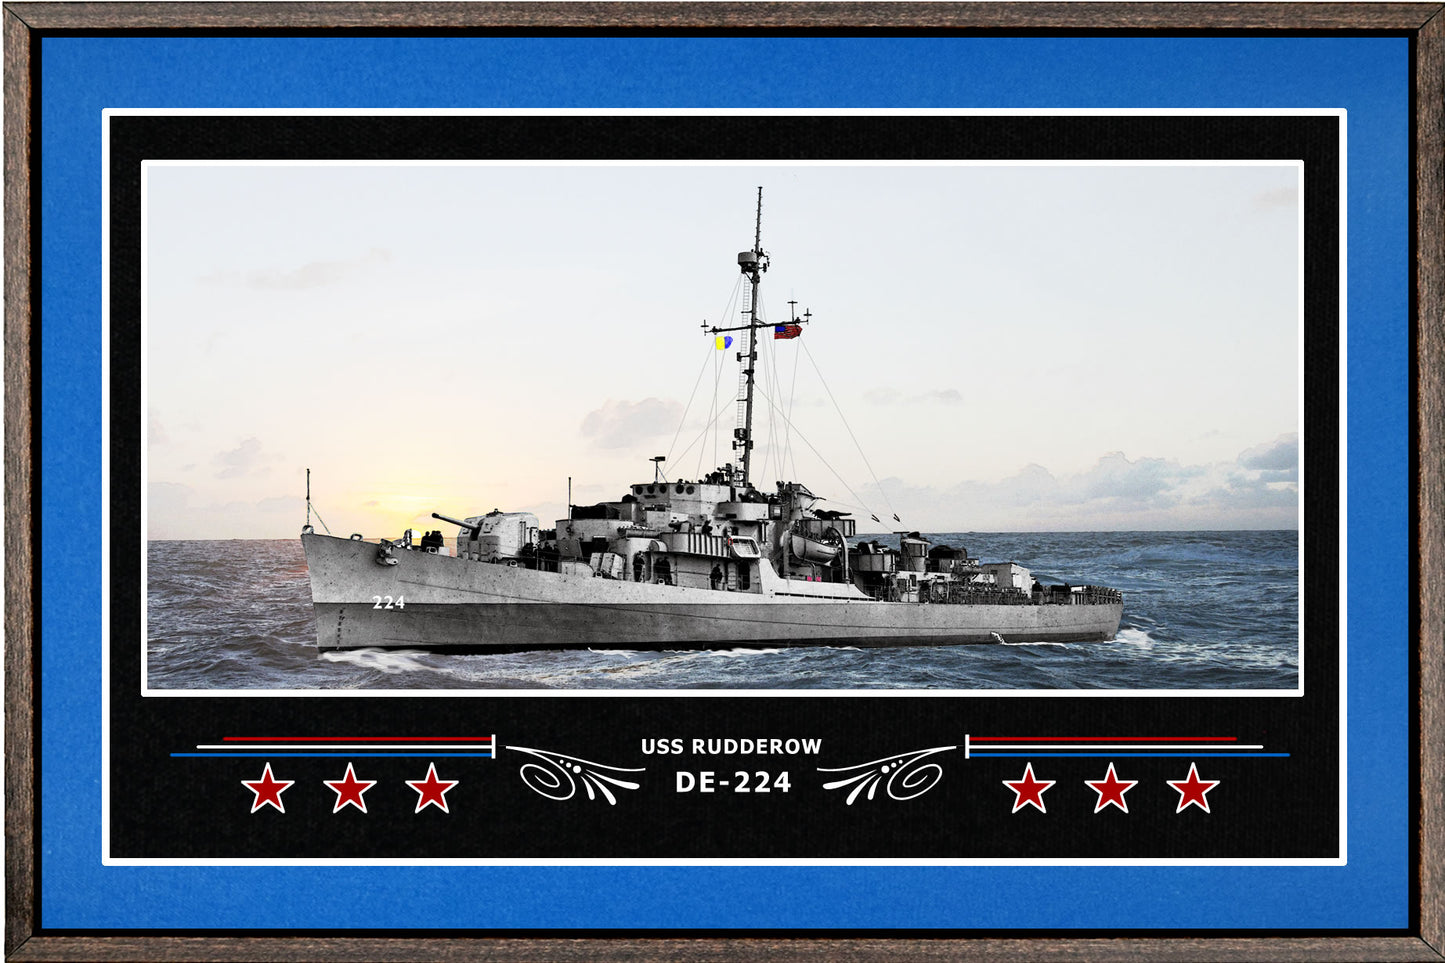 USS RUDDEROW DE 224 BOX FRAMED CANVAS ART BLUE